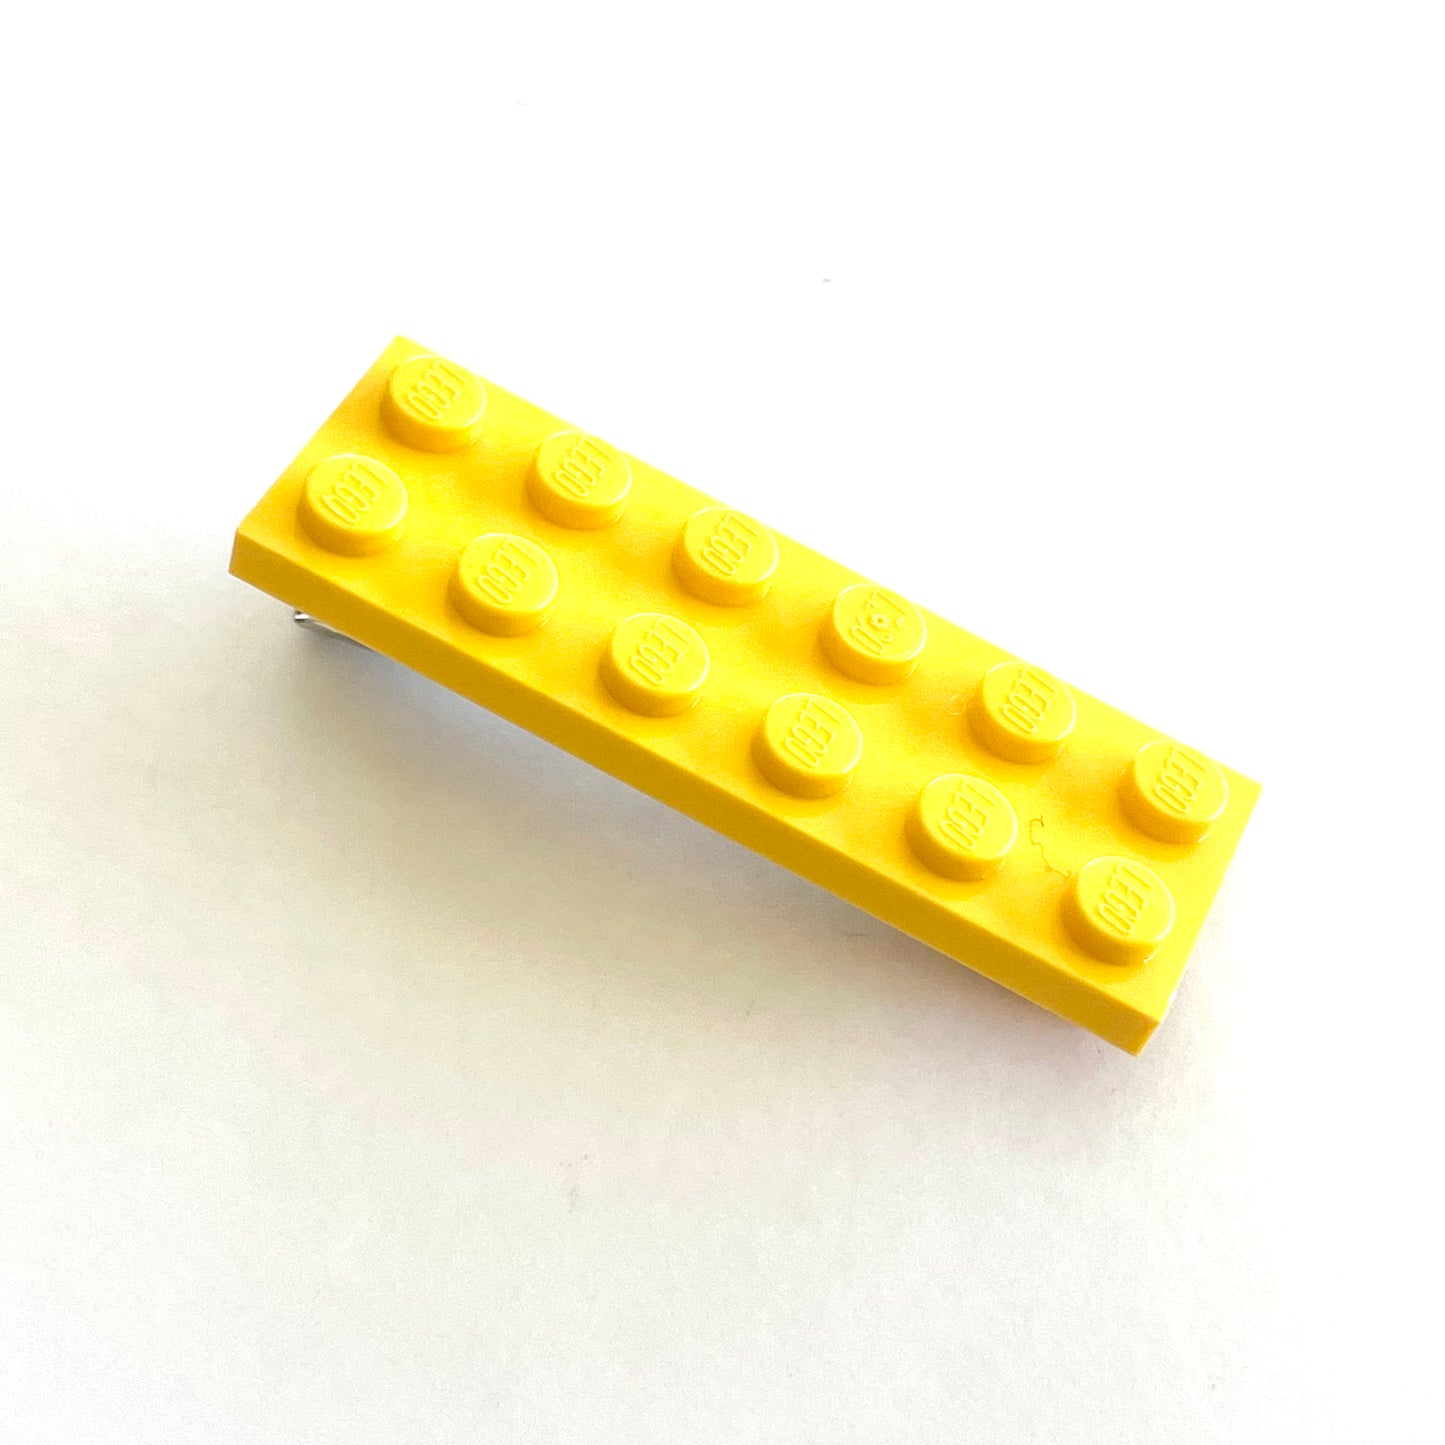 KB Lego 2x6 Barrette Yellow